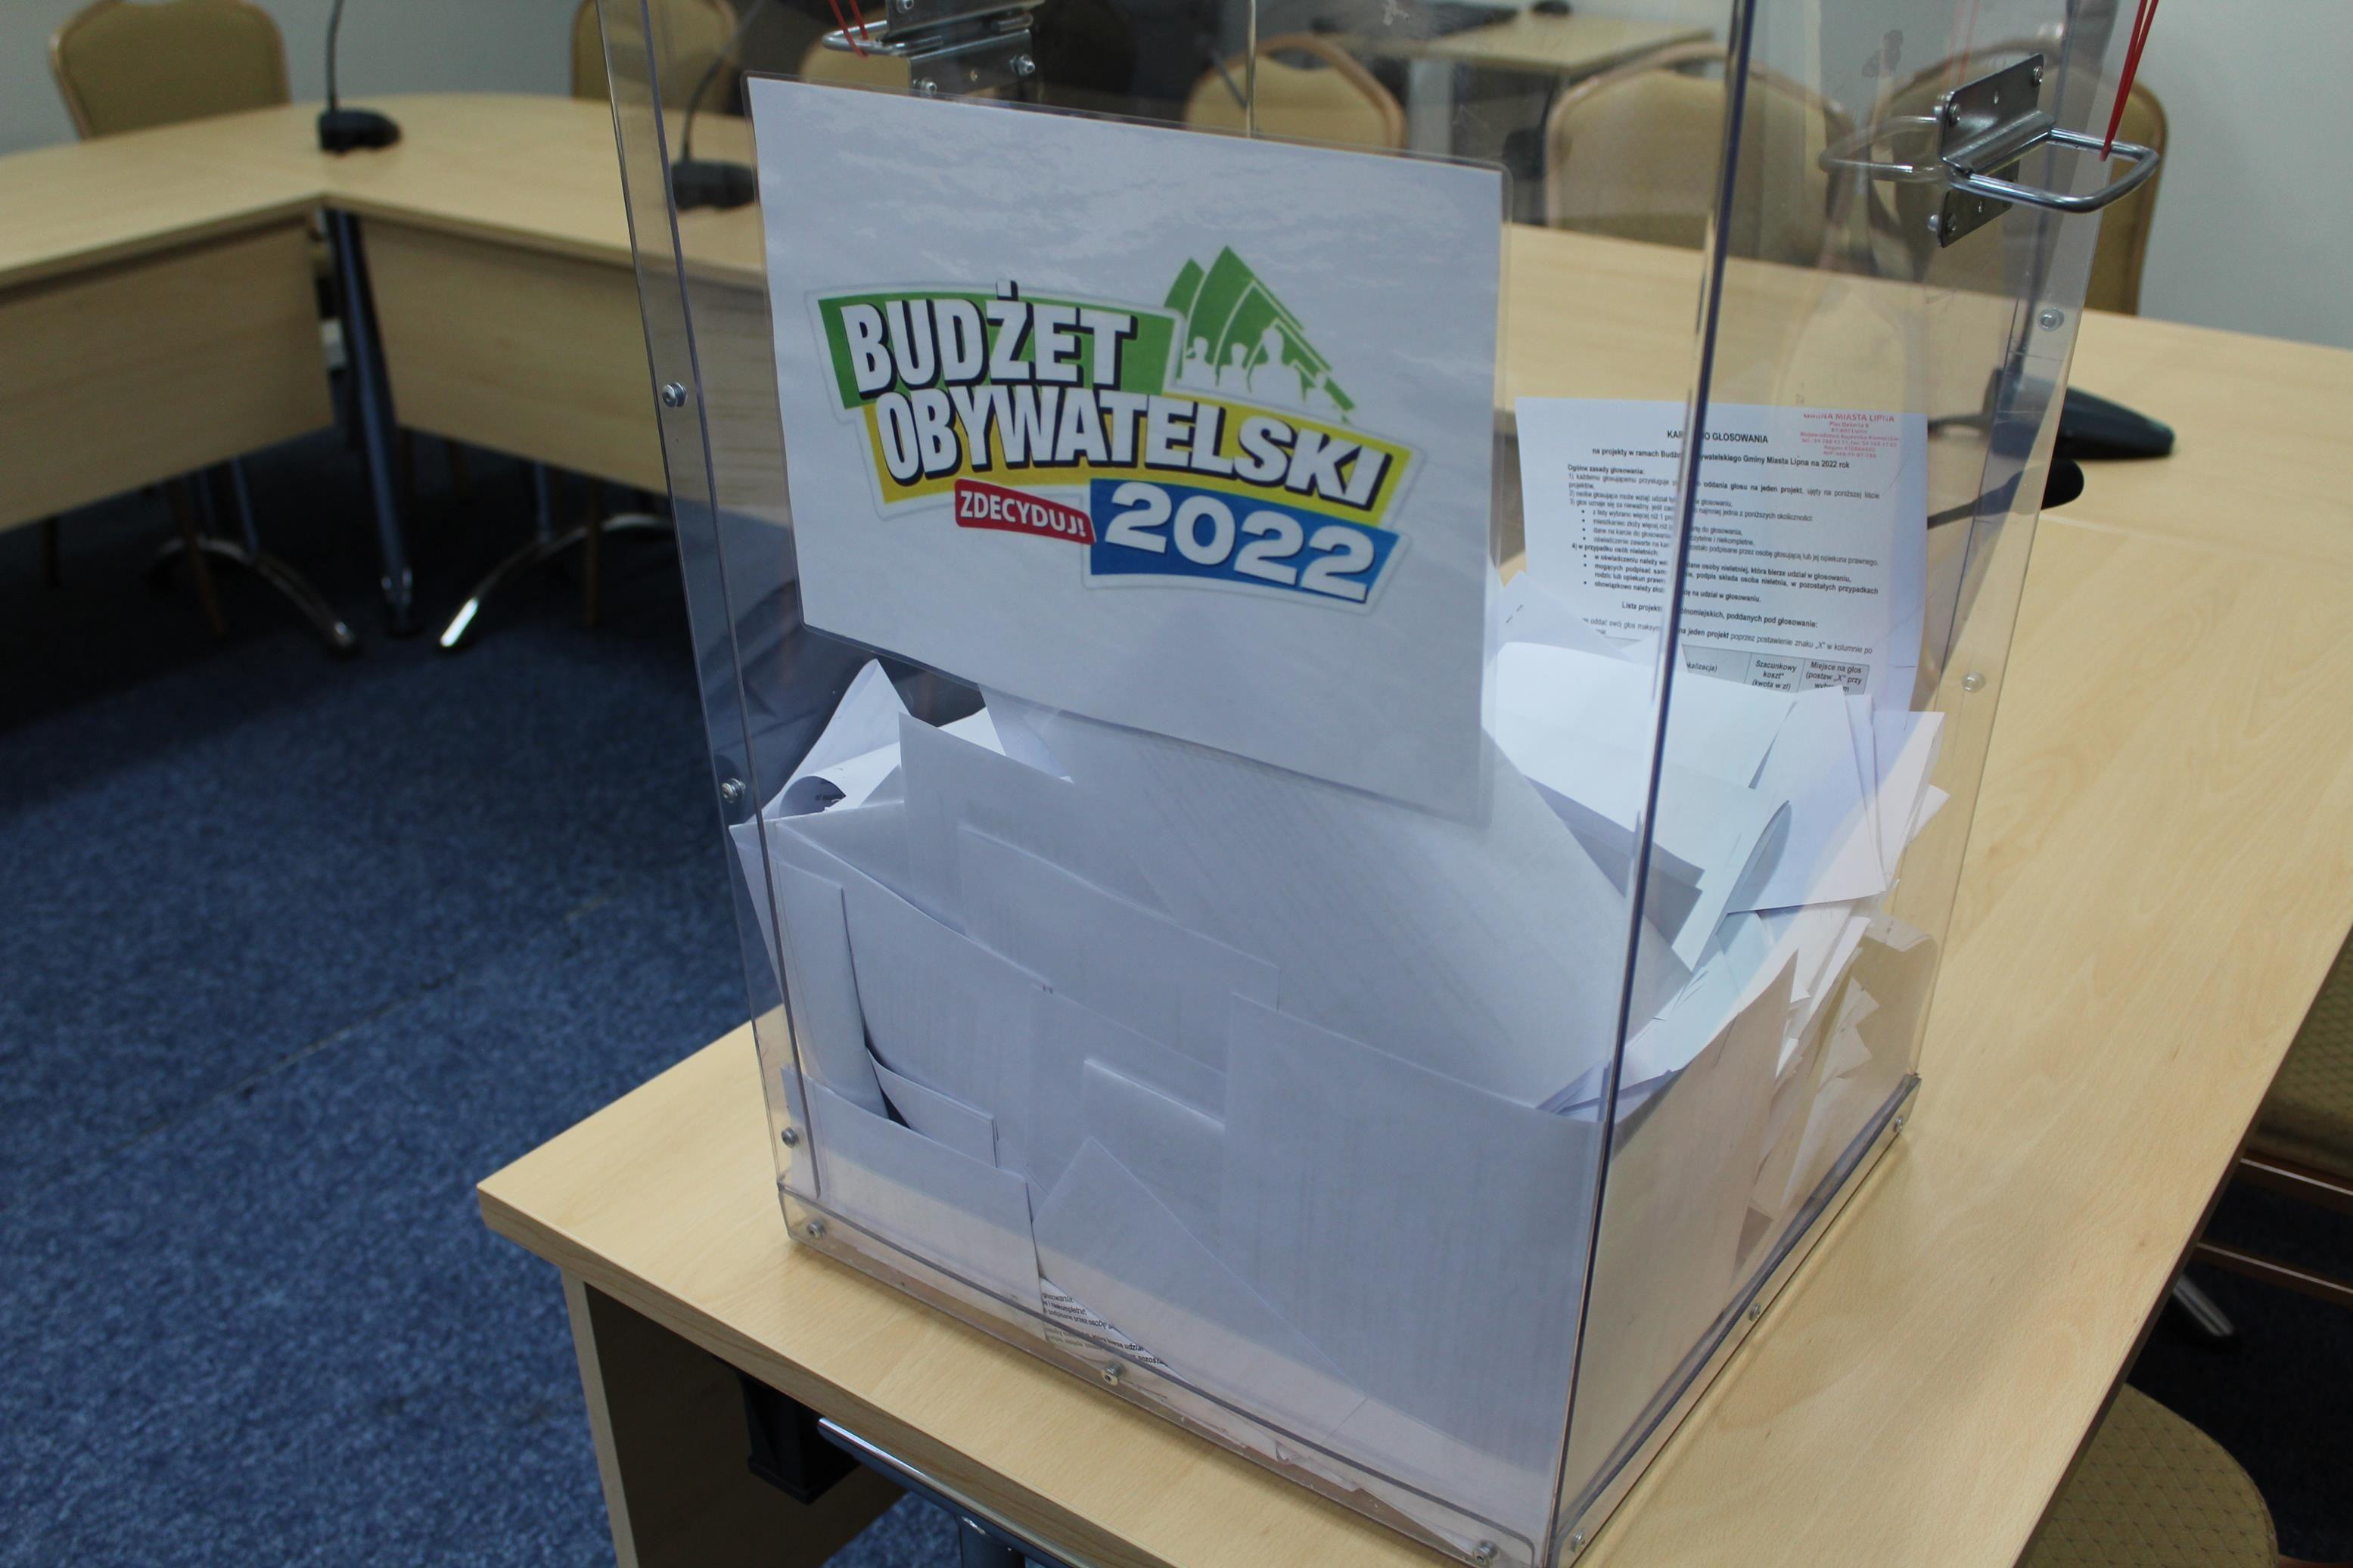 Zdj. nr. 1. Otwarcie urny do głosowania - Budżet Obywatelski 2022